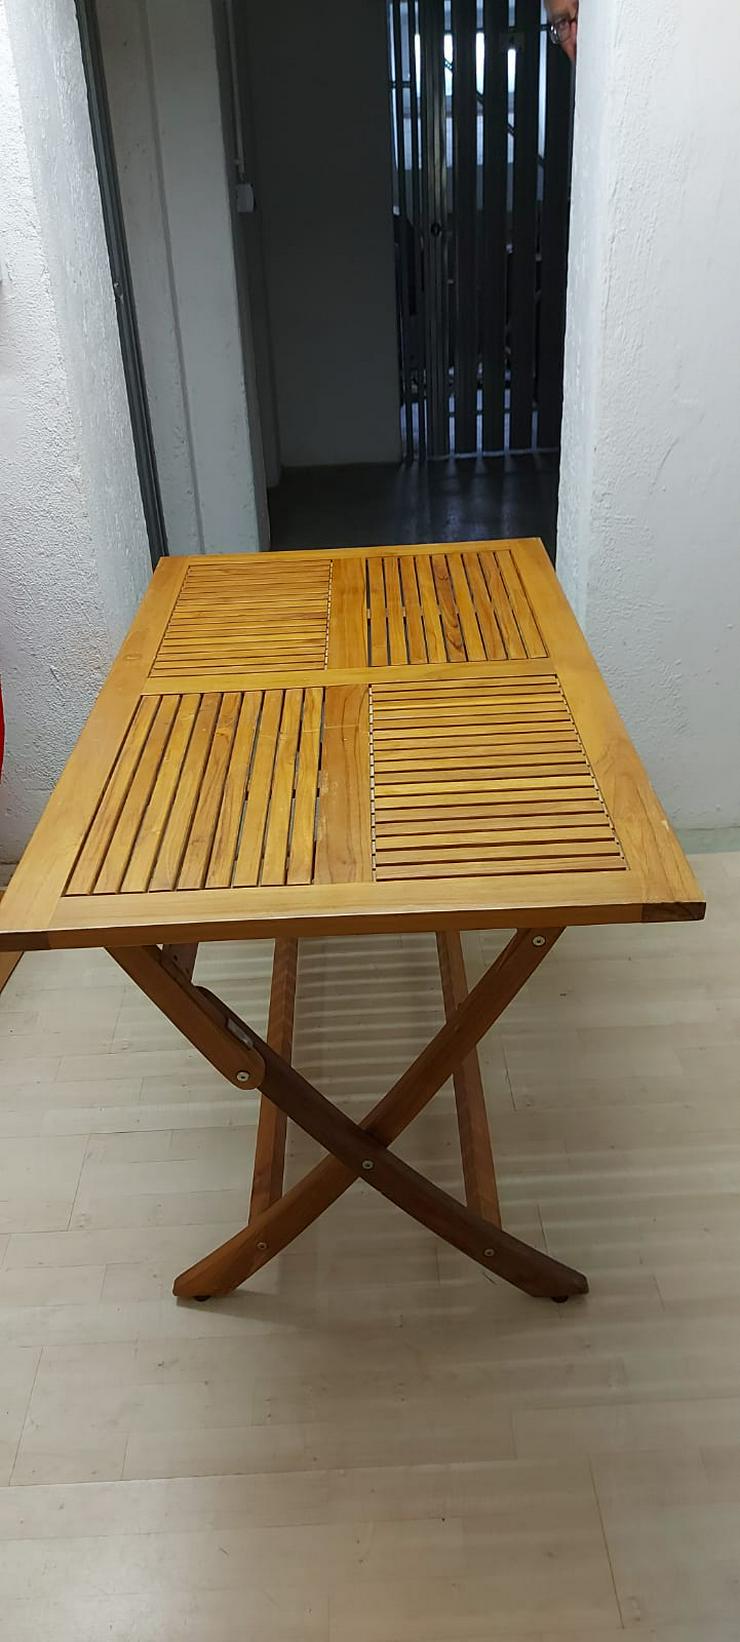 schöne Holztisch, 120x70